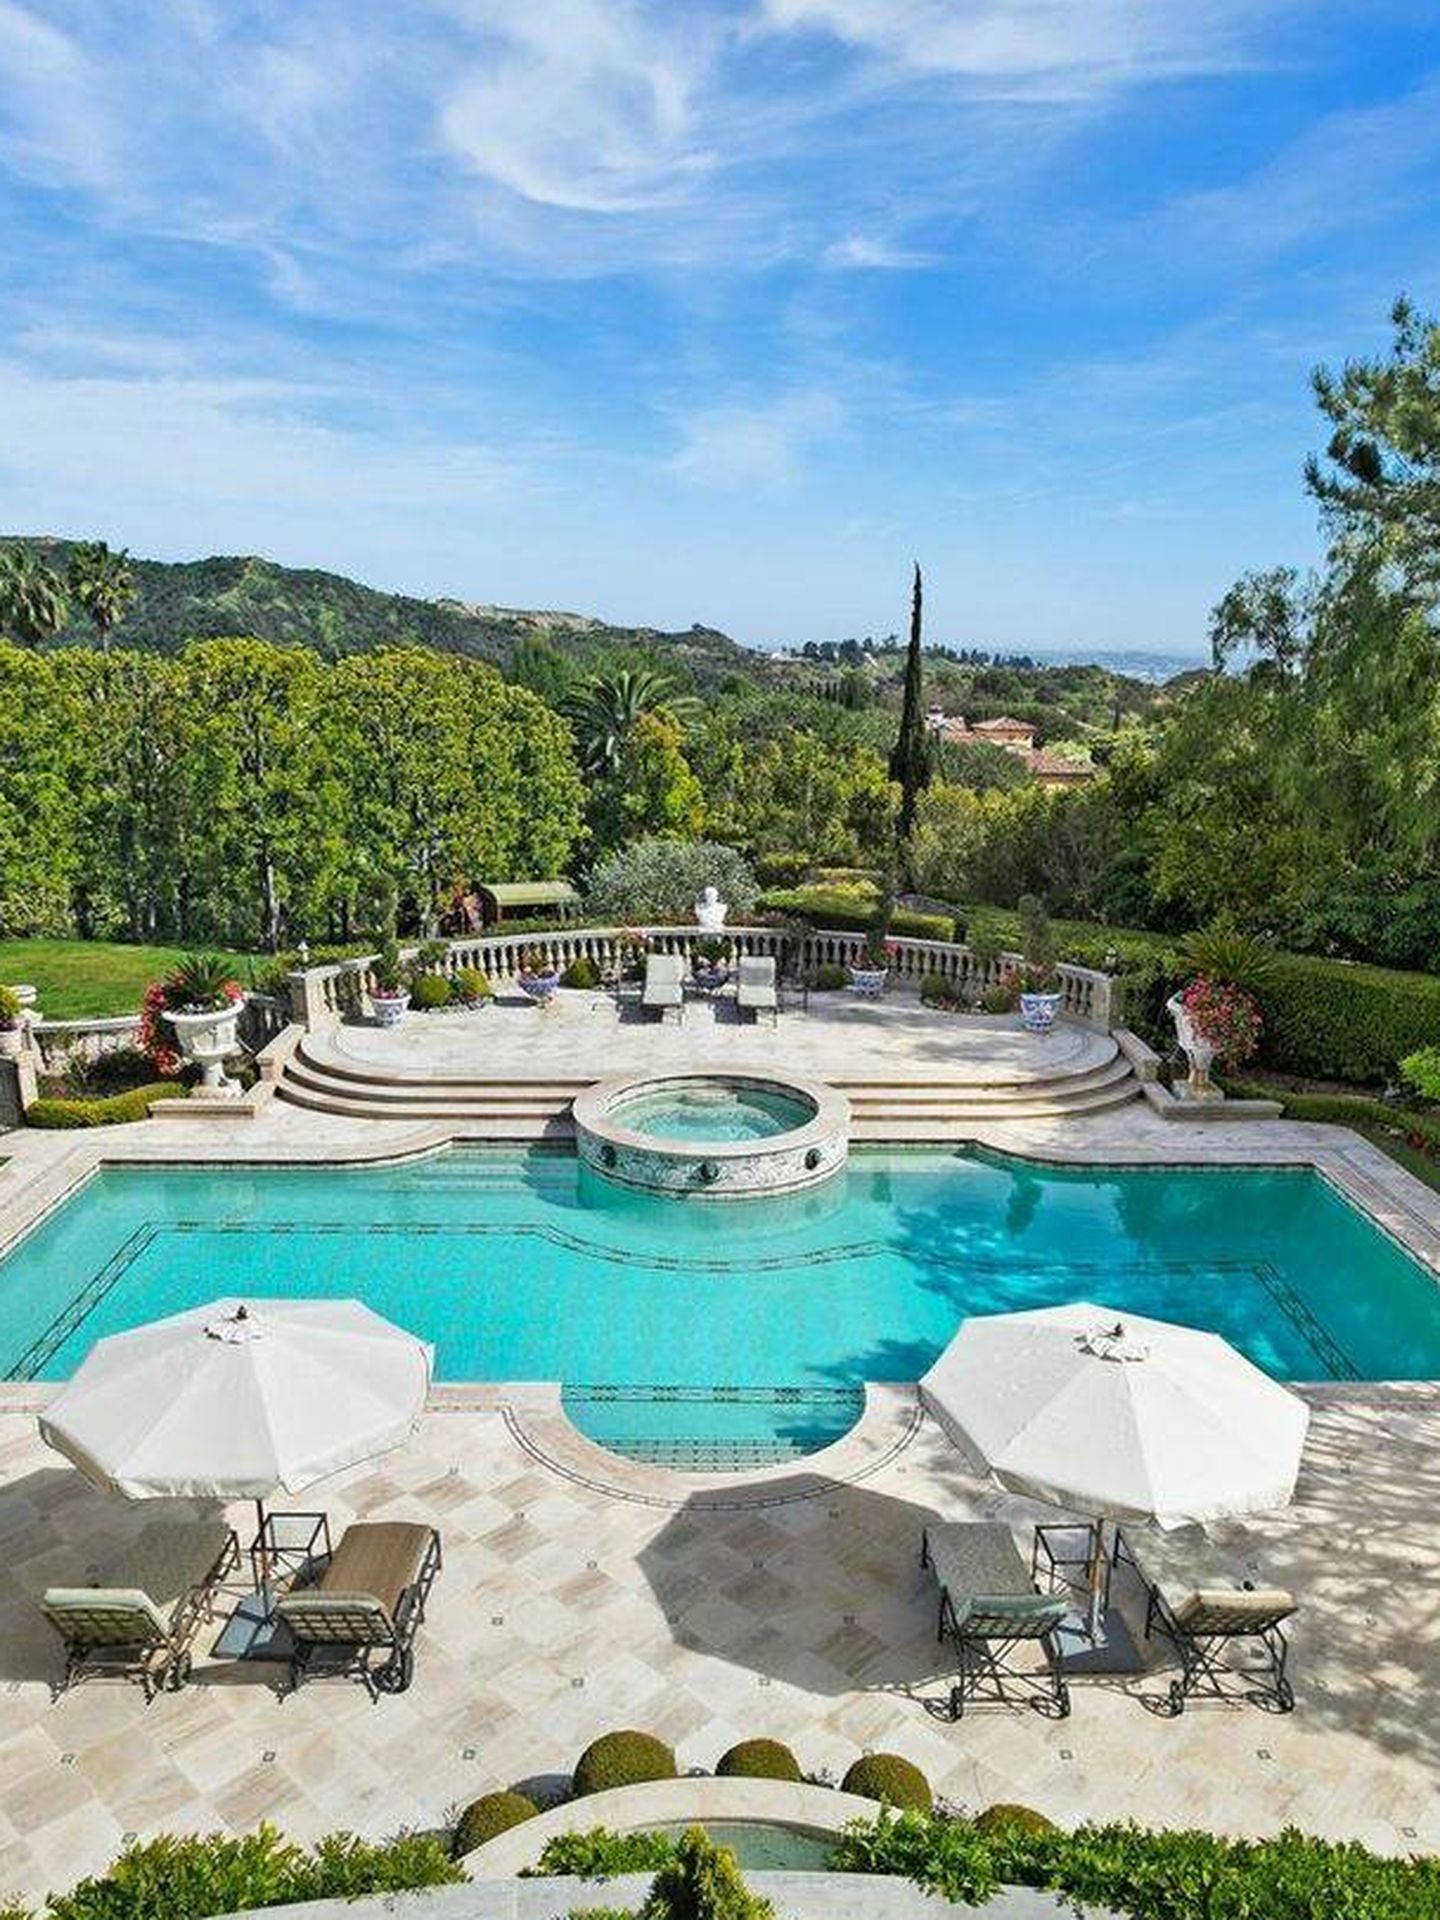 Foto de la piscina y las impresionantes vistas que tiene la zona de jardines de la mansión de Rod Stewart. (Instagram/@michelleoliverla)